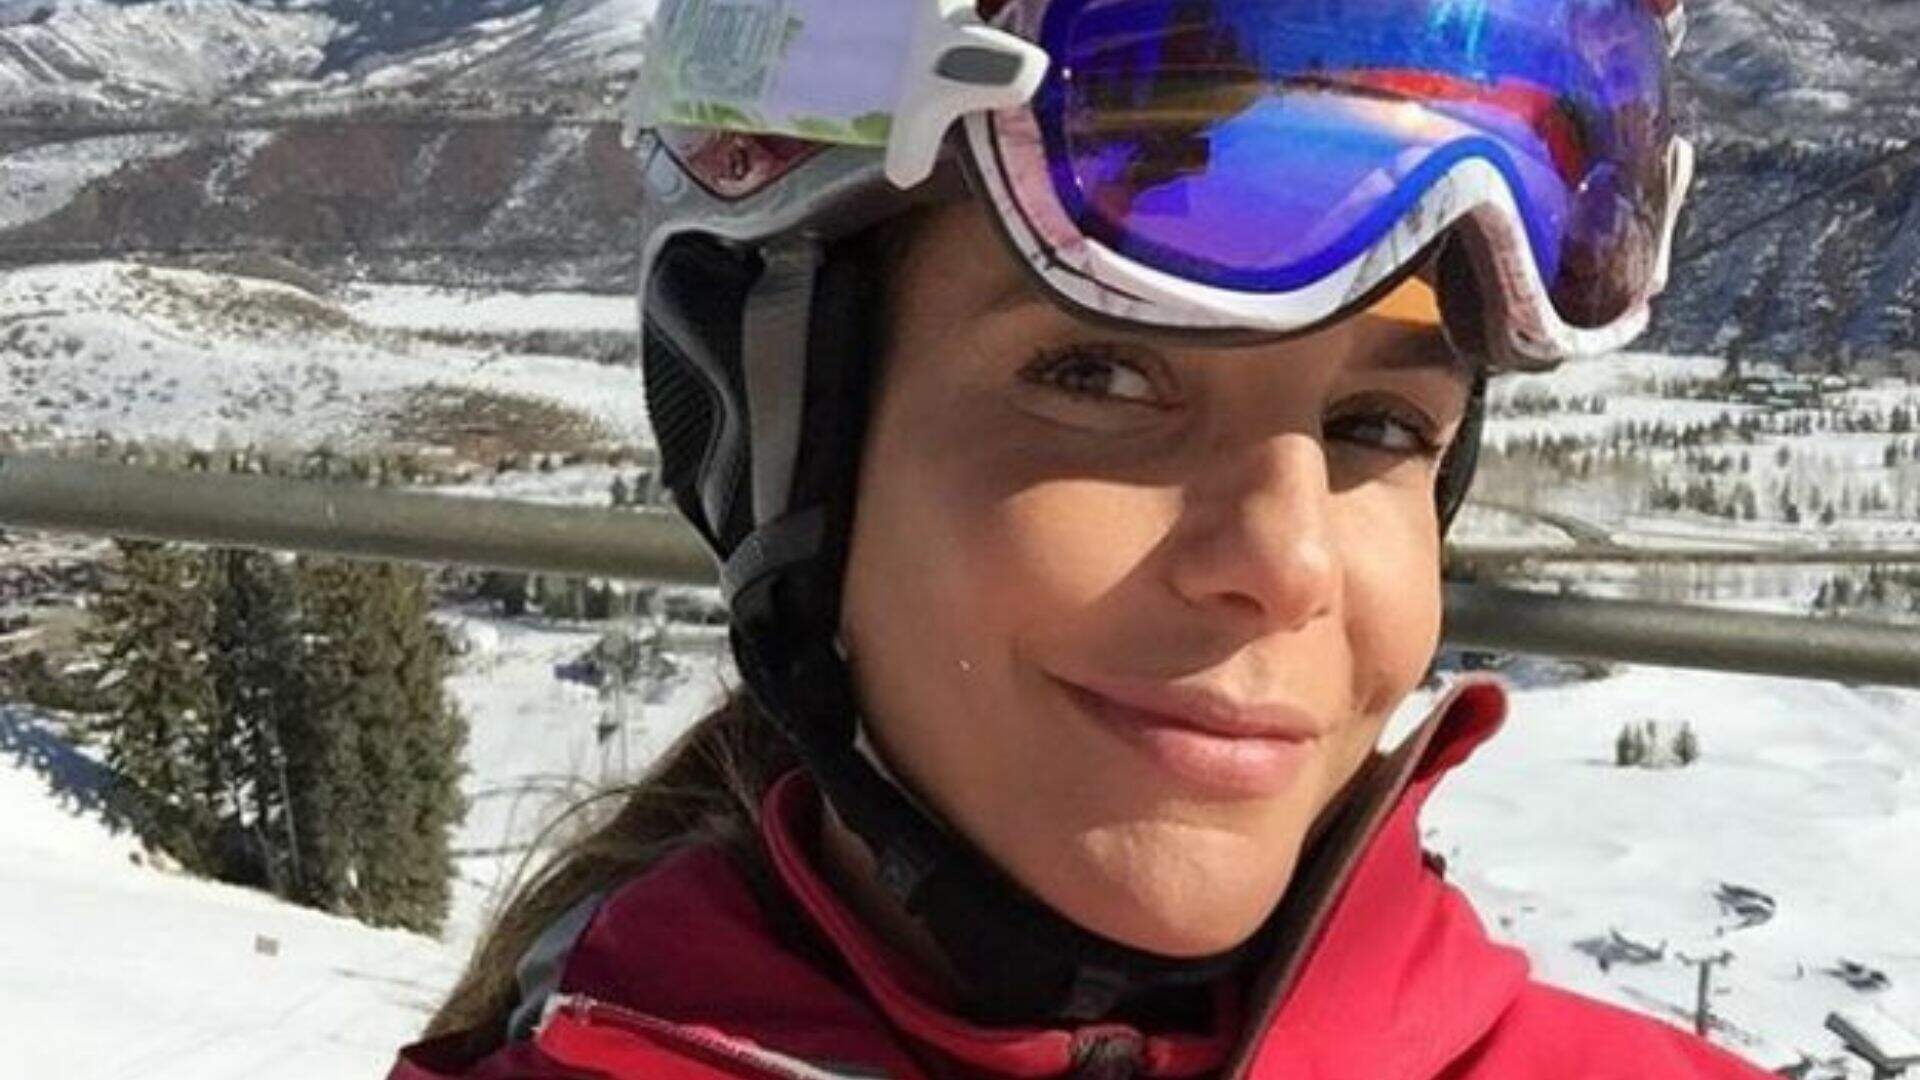 Ivete Sangalo posta vídeo de seu acidente esquiando “Me senti em um filme de ação” - Metropolitana FM